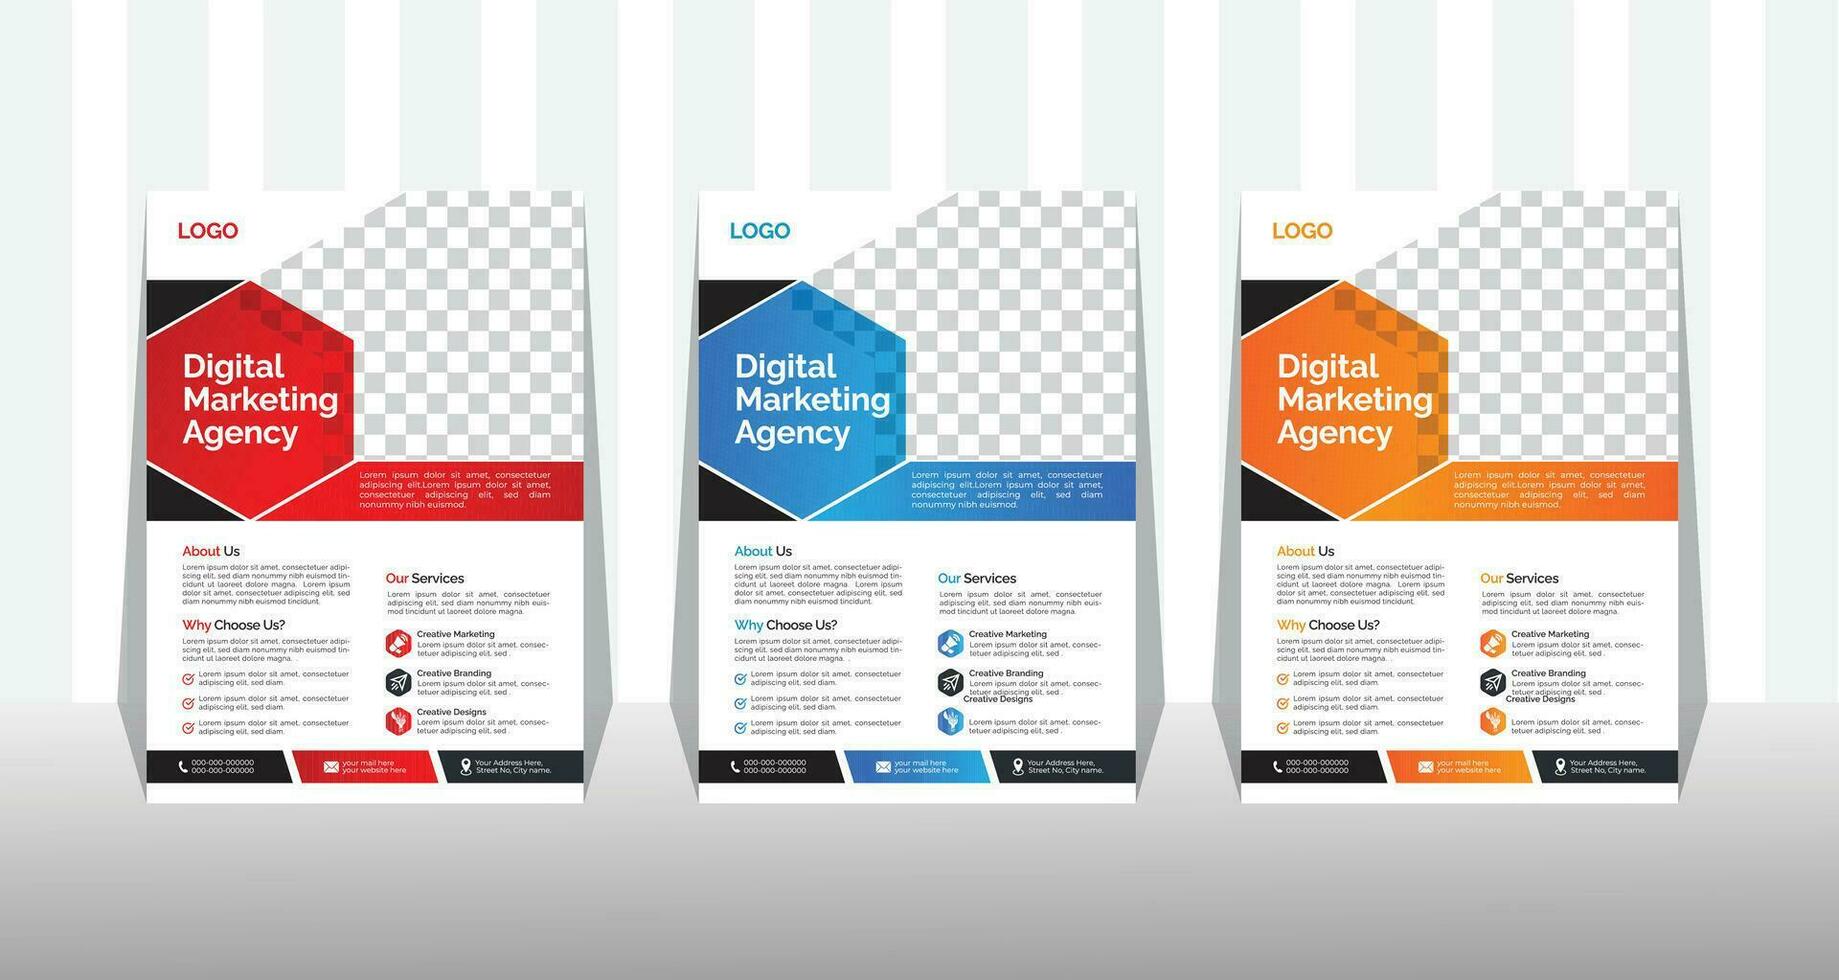 korporativ Geschäft Flyer und Broschüre Startseite Design Layout Hintergrund mit drei Farben planen, Vektor Vorlage im a4 Größe.